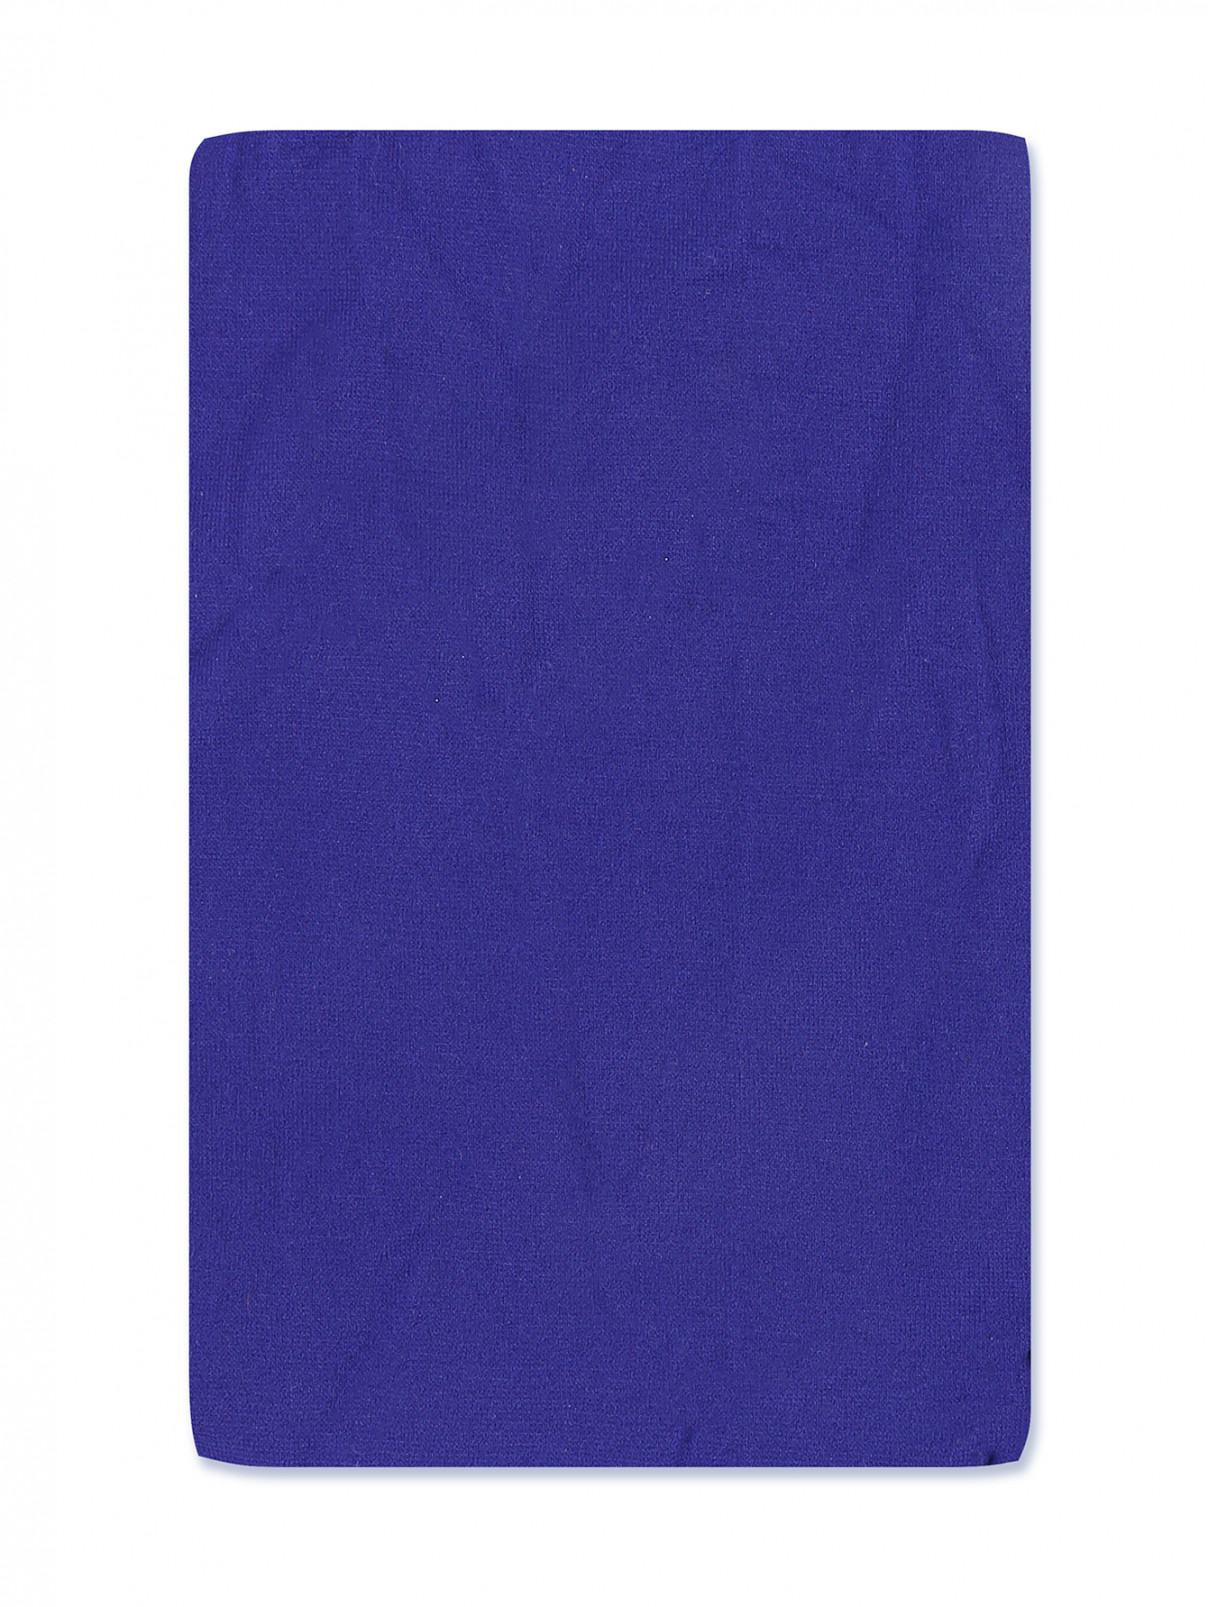 Колготки эластичные с полосками Jean Paul Gaultier  –  Общий вид  – Цвет:  Фиолетовый